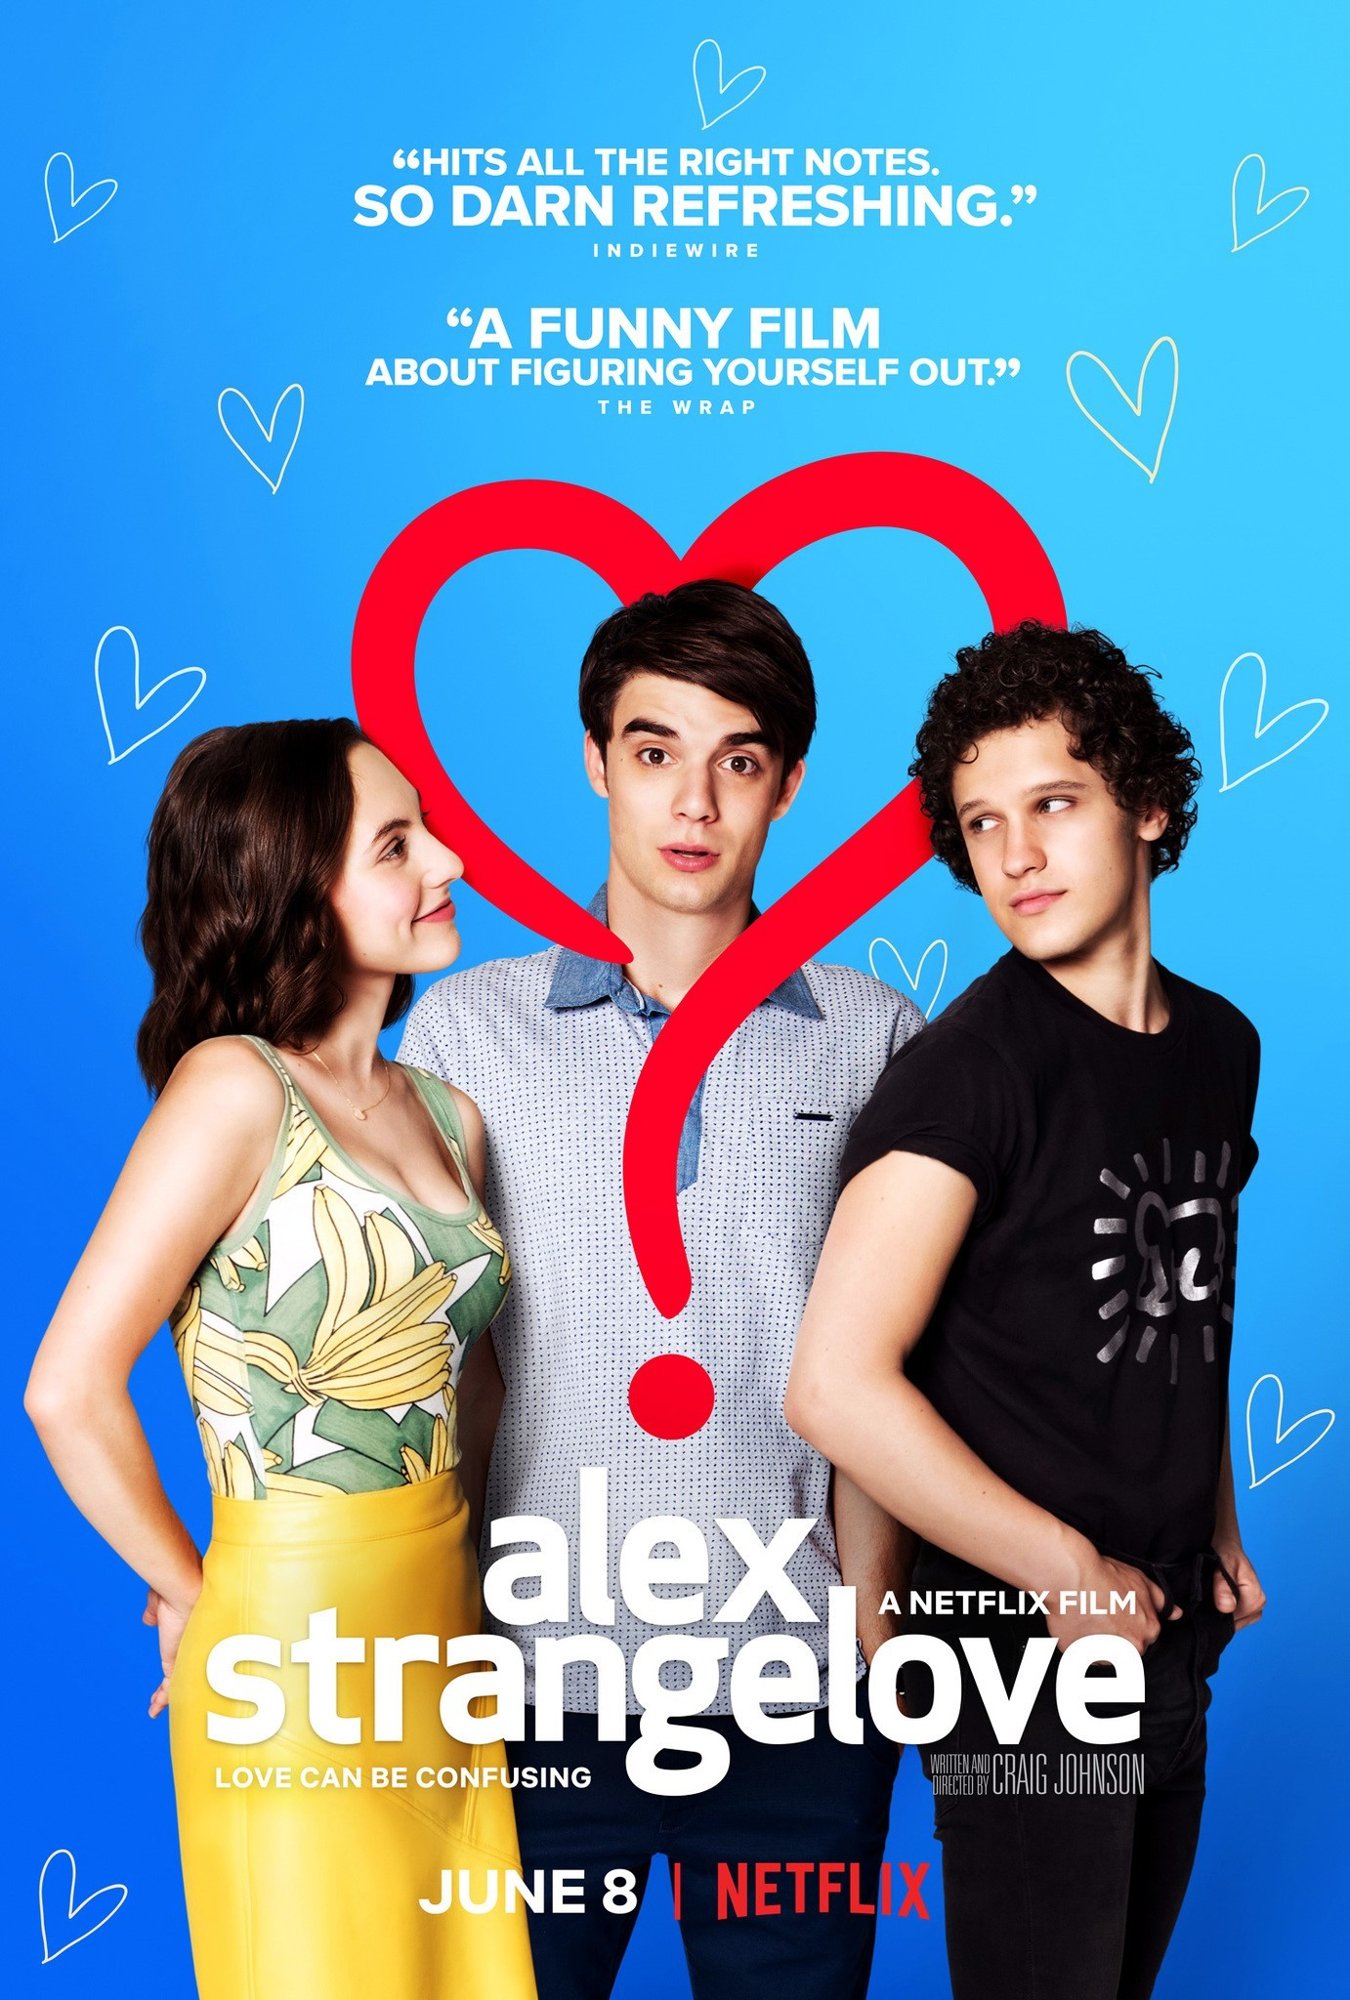 Poster of Netflix's Alex Strangelove (2018)